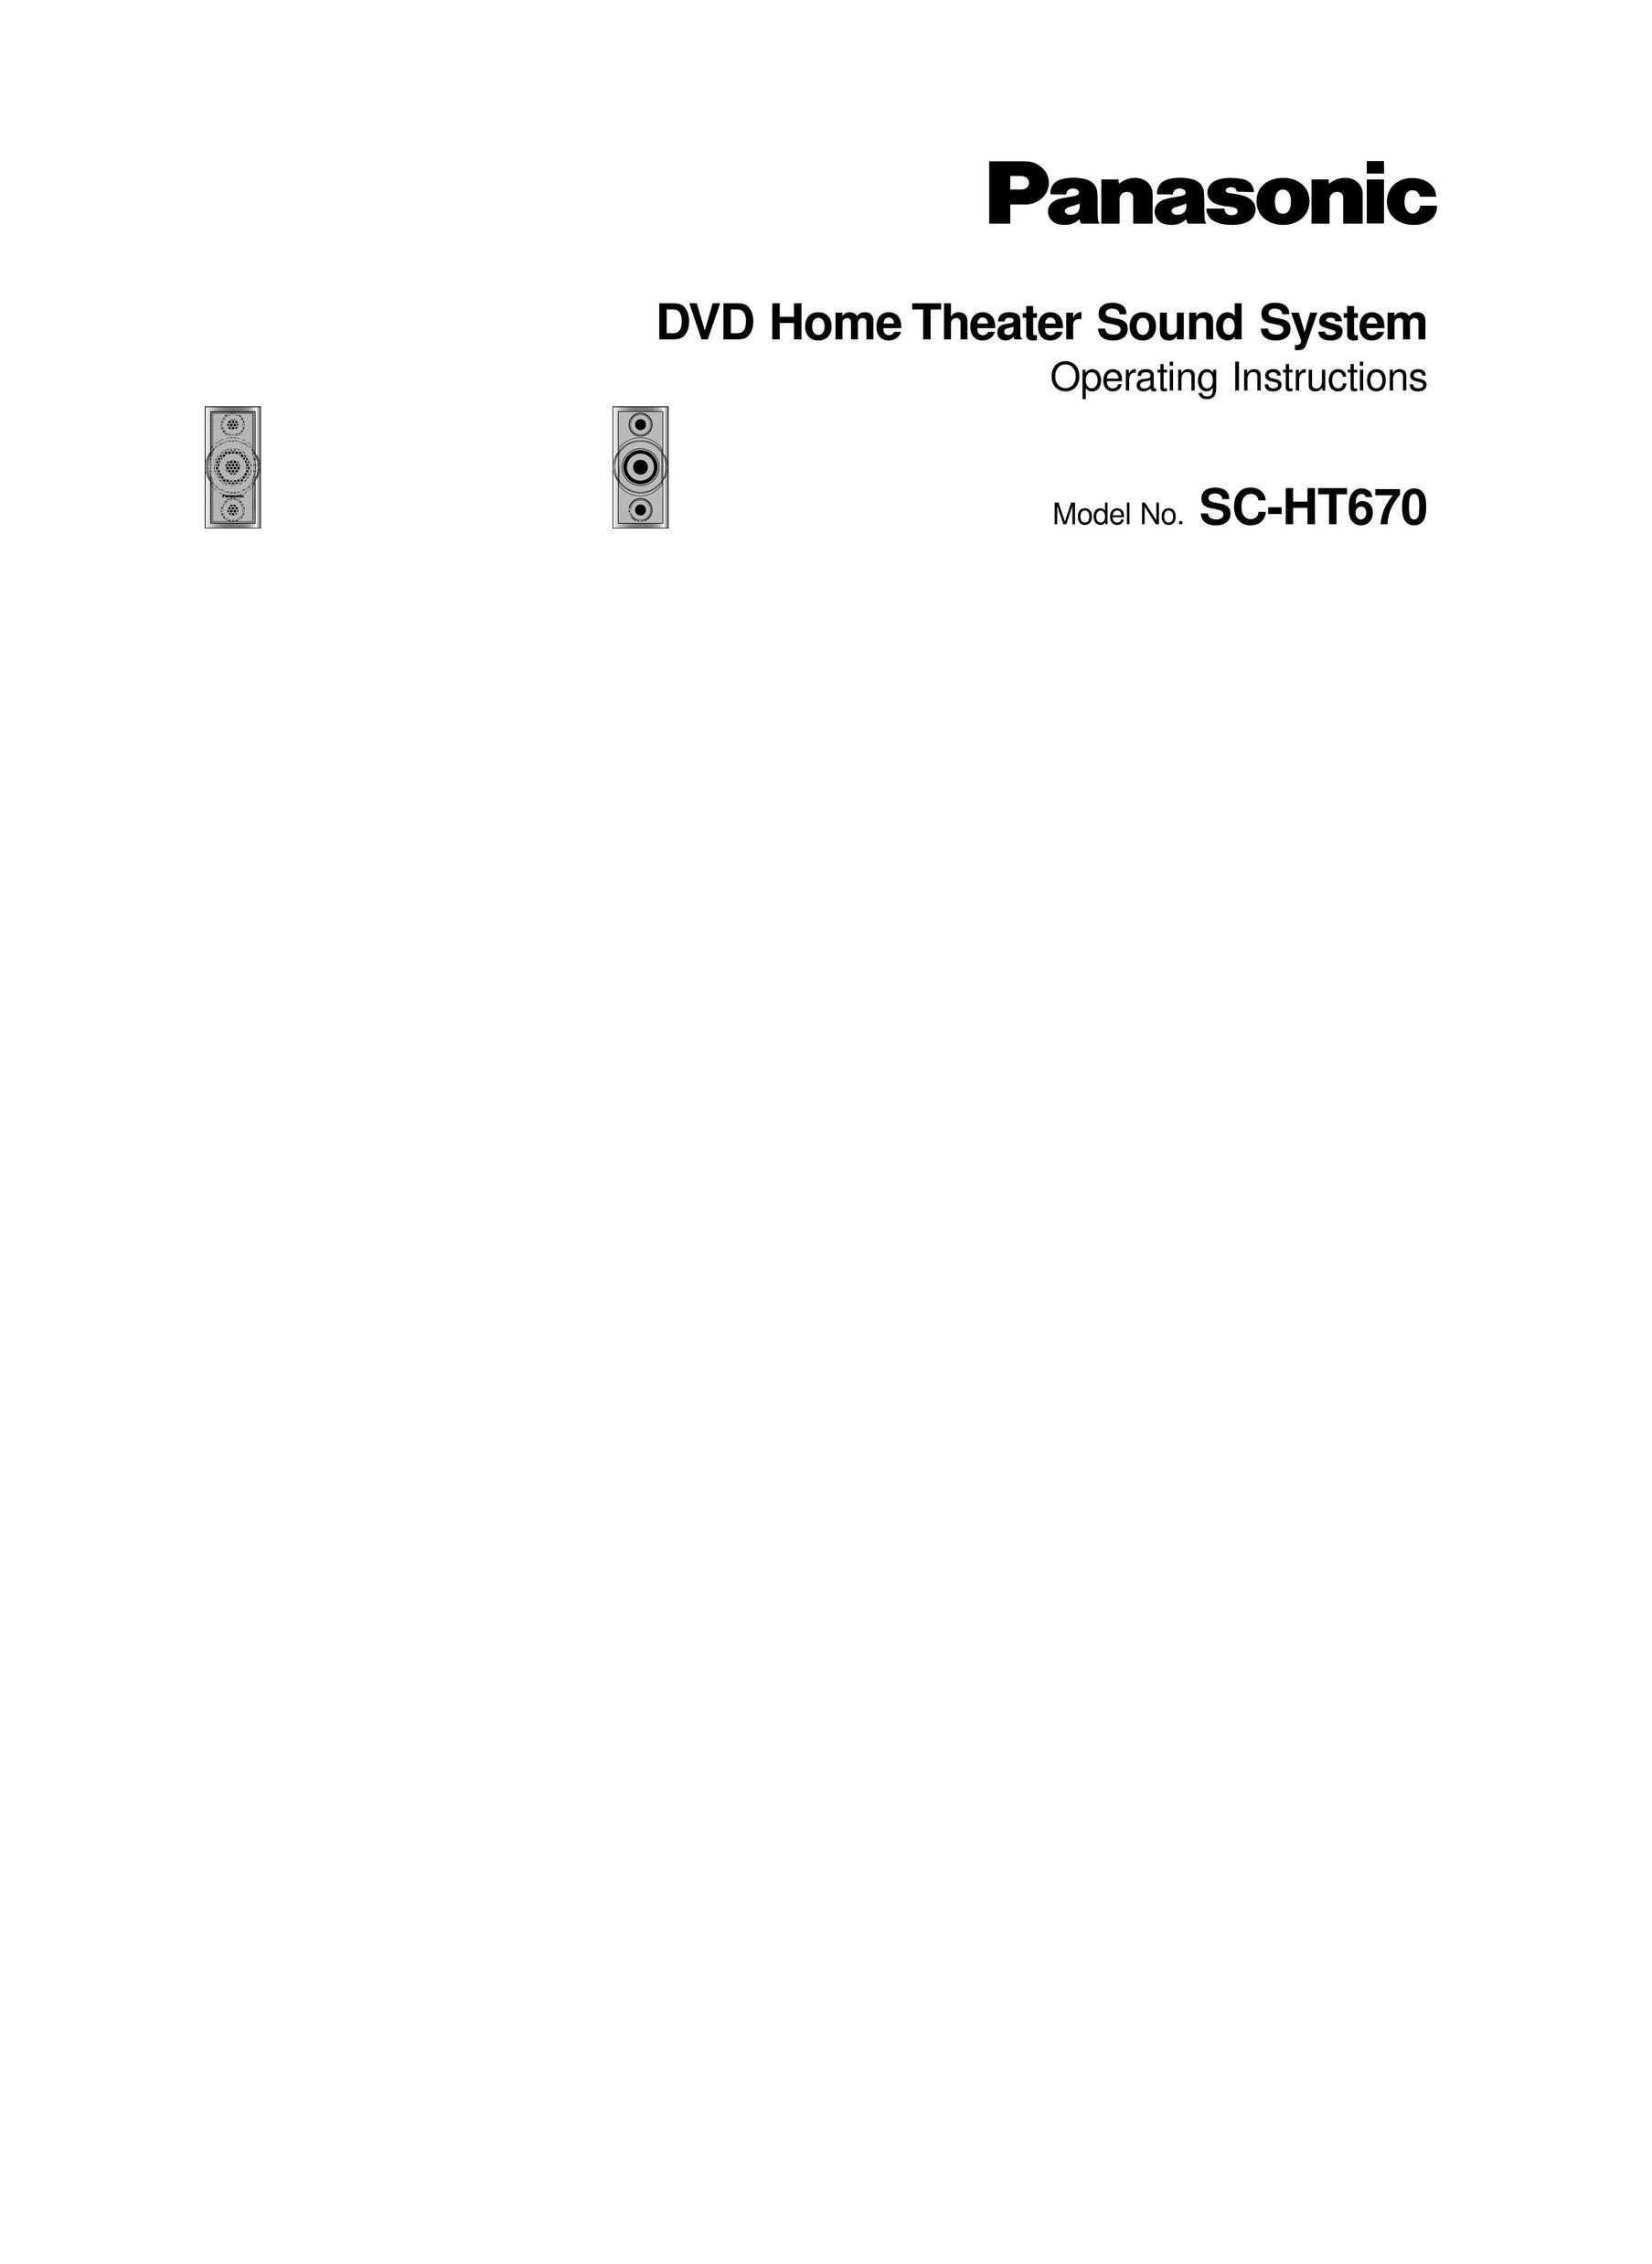 Panasonic SC-HT670 Speaker System User Manual